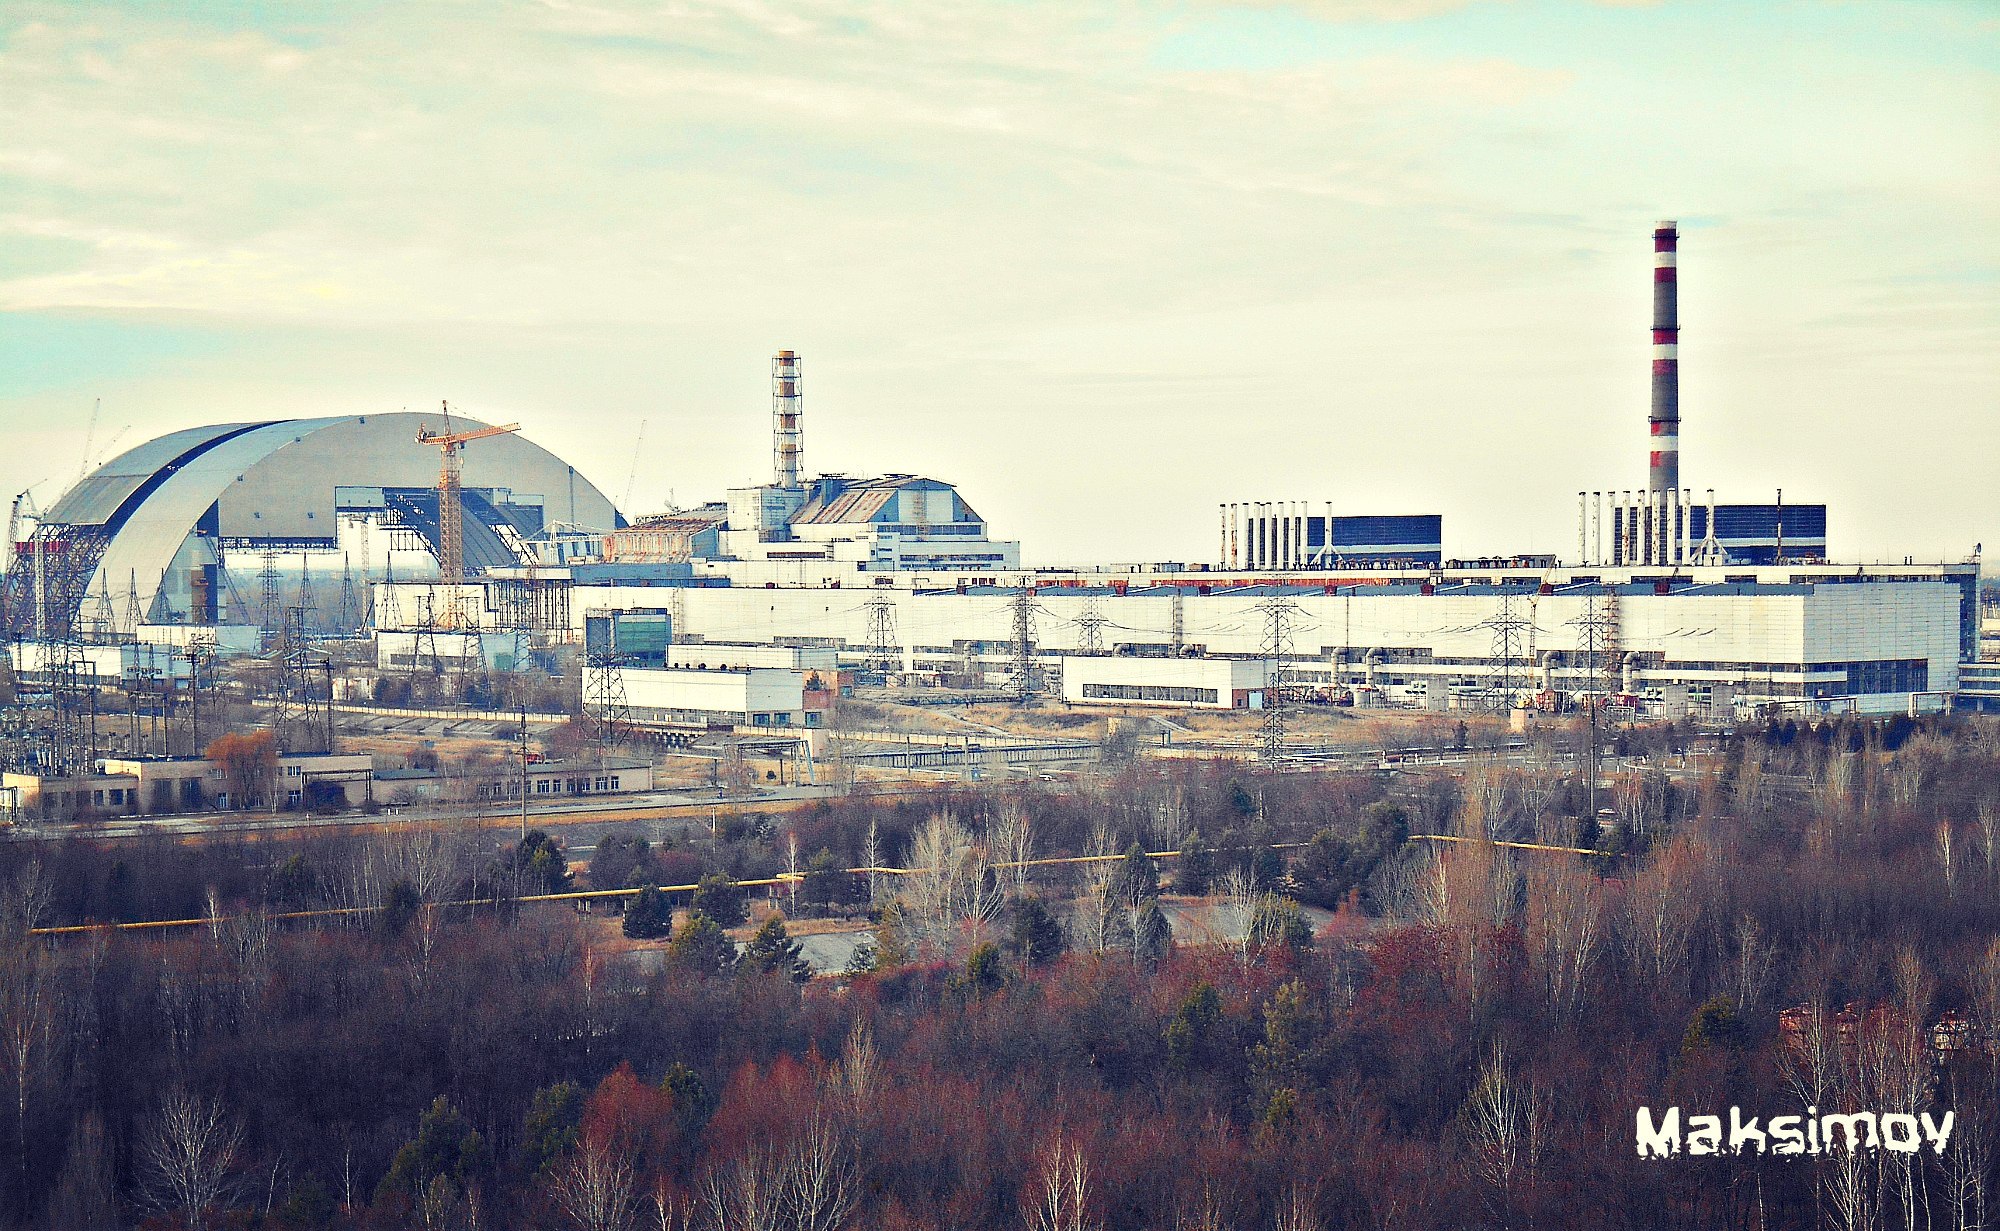 chernobyl, man made